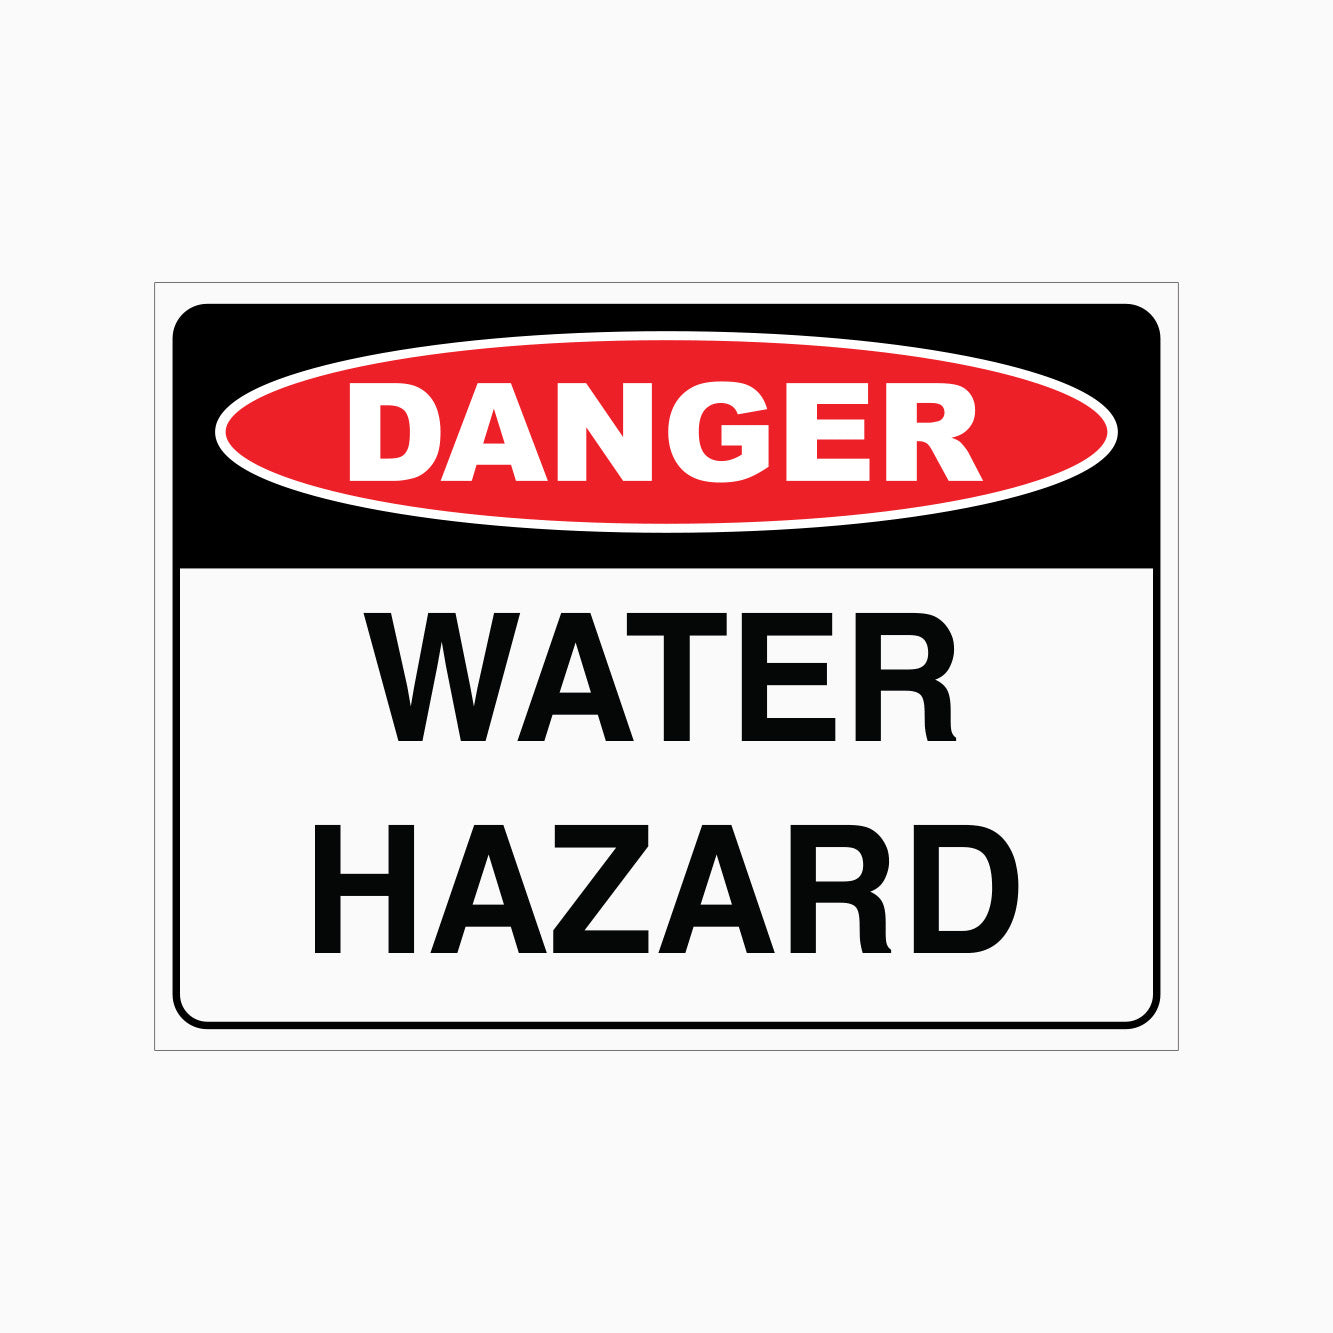 DANGER WATER HAZARD SIGN